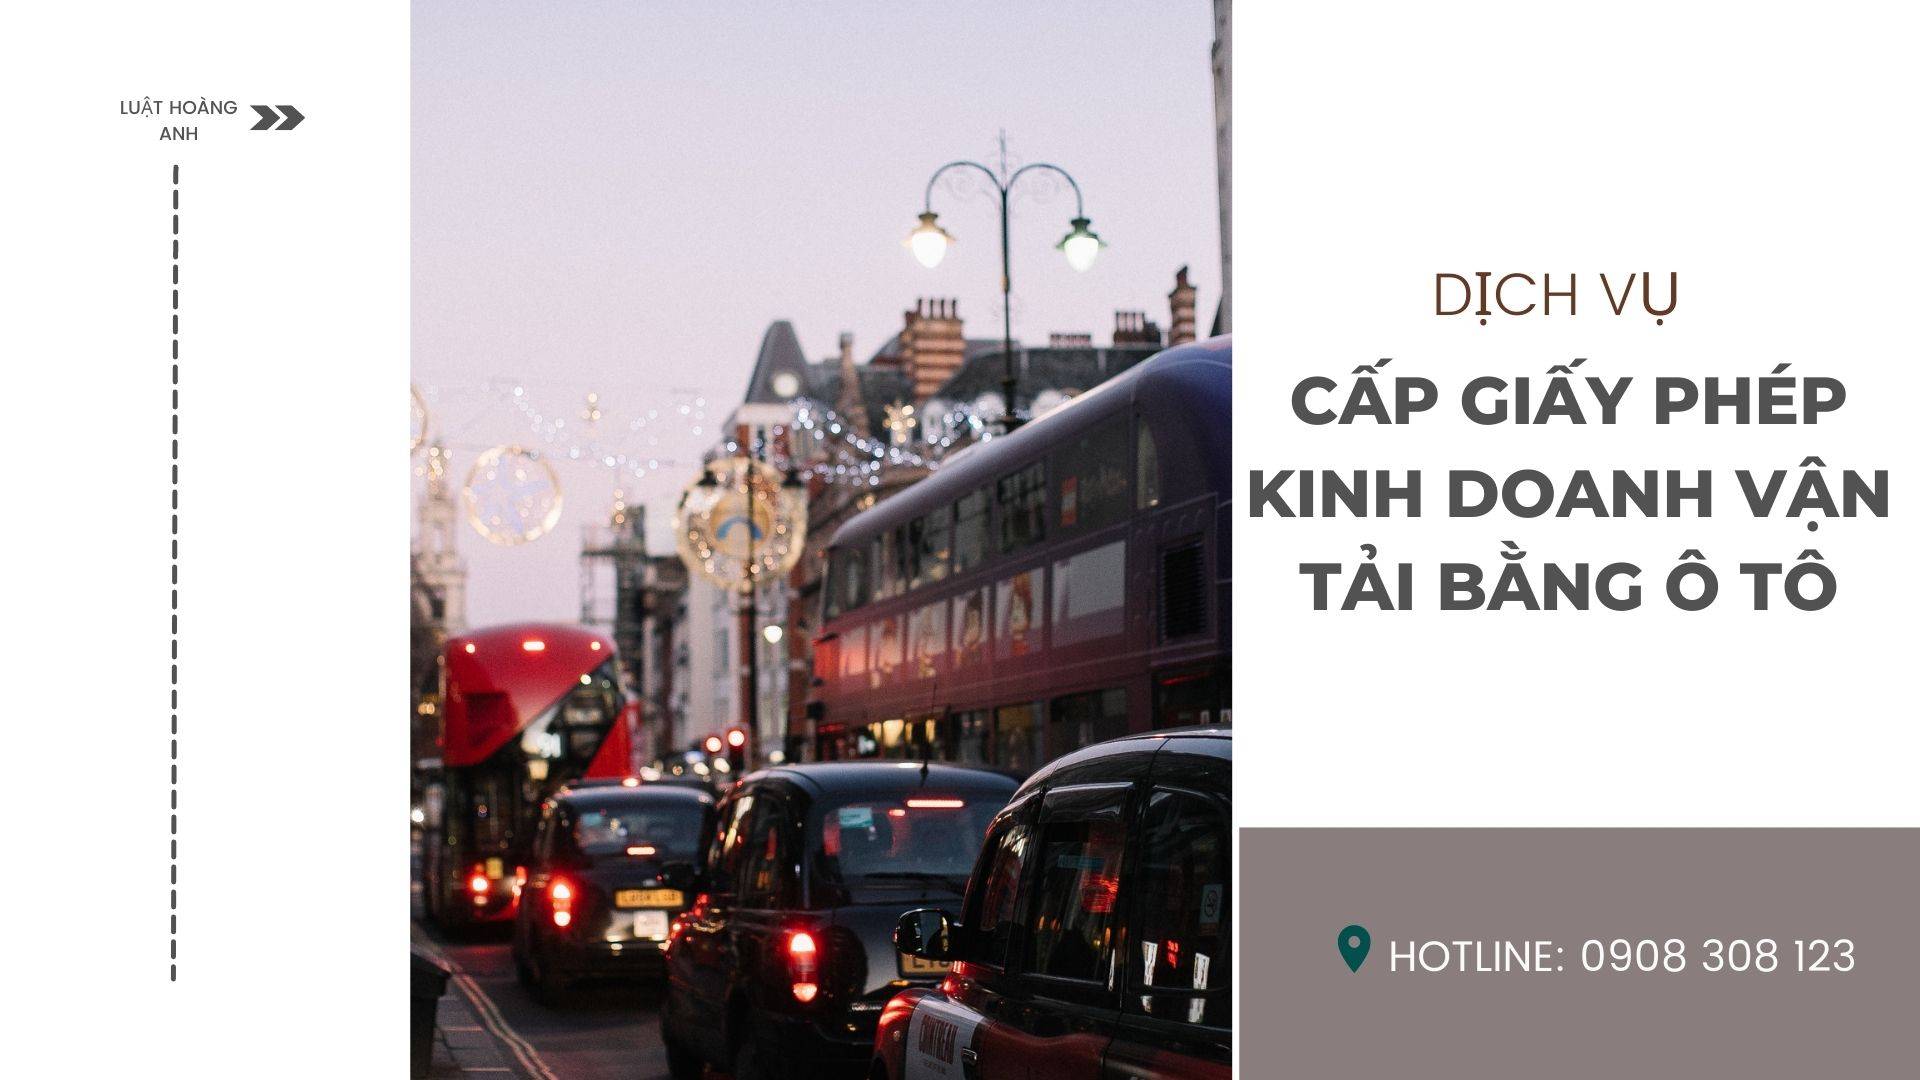 Dịch vụ cấp giấy phép kinh doanh vận tải bằng ô tô tại tỉnh Hà Giang